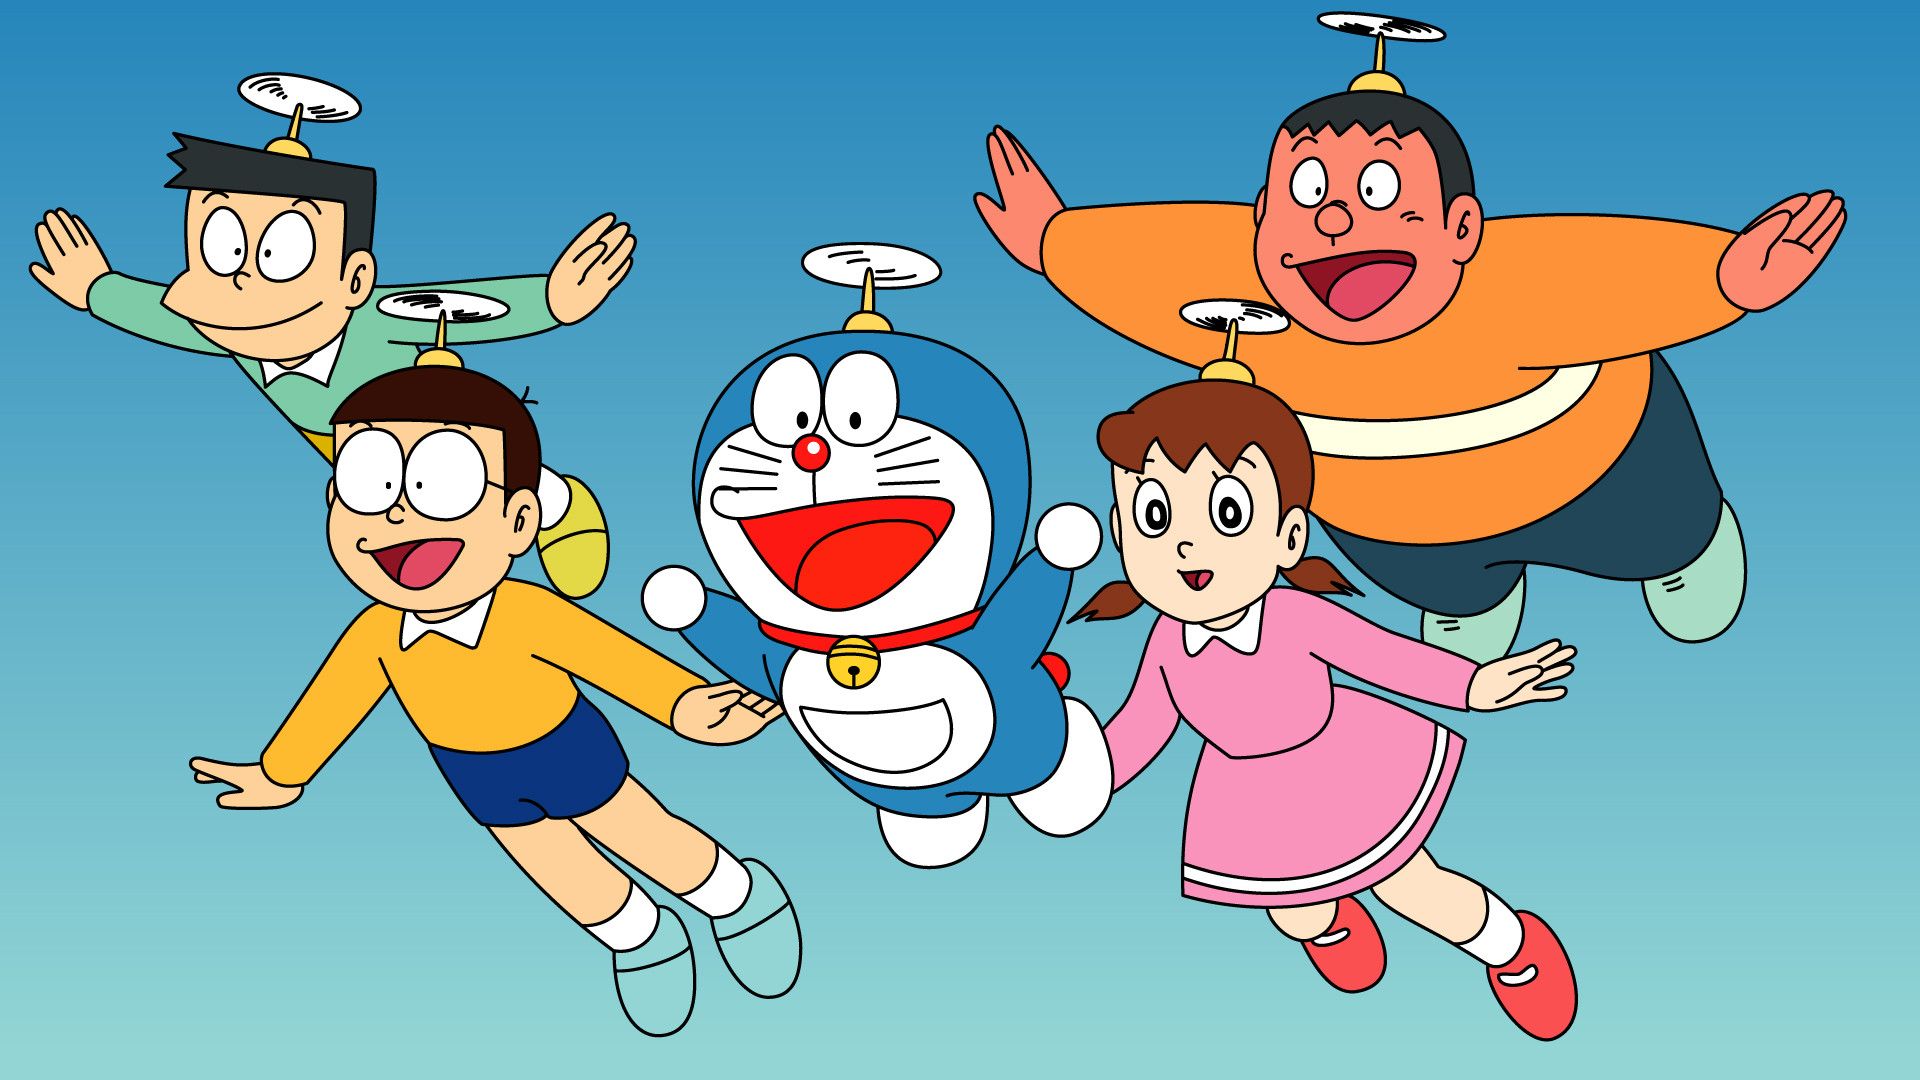 50+] Doraemon 3d Wallpaper 2015 - WallpaperSafari